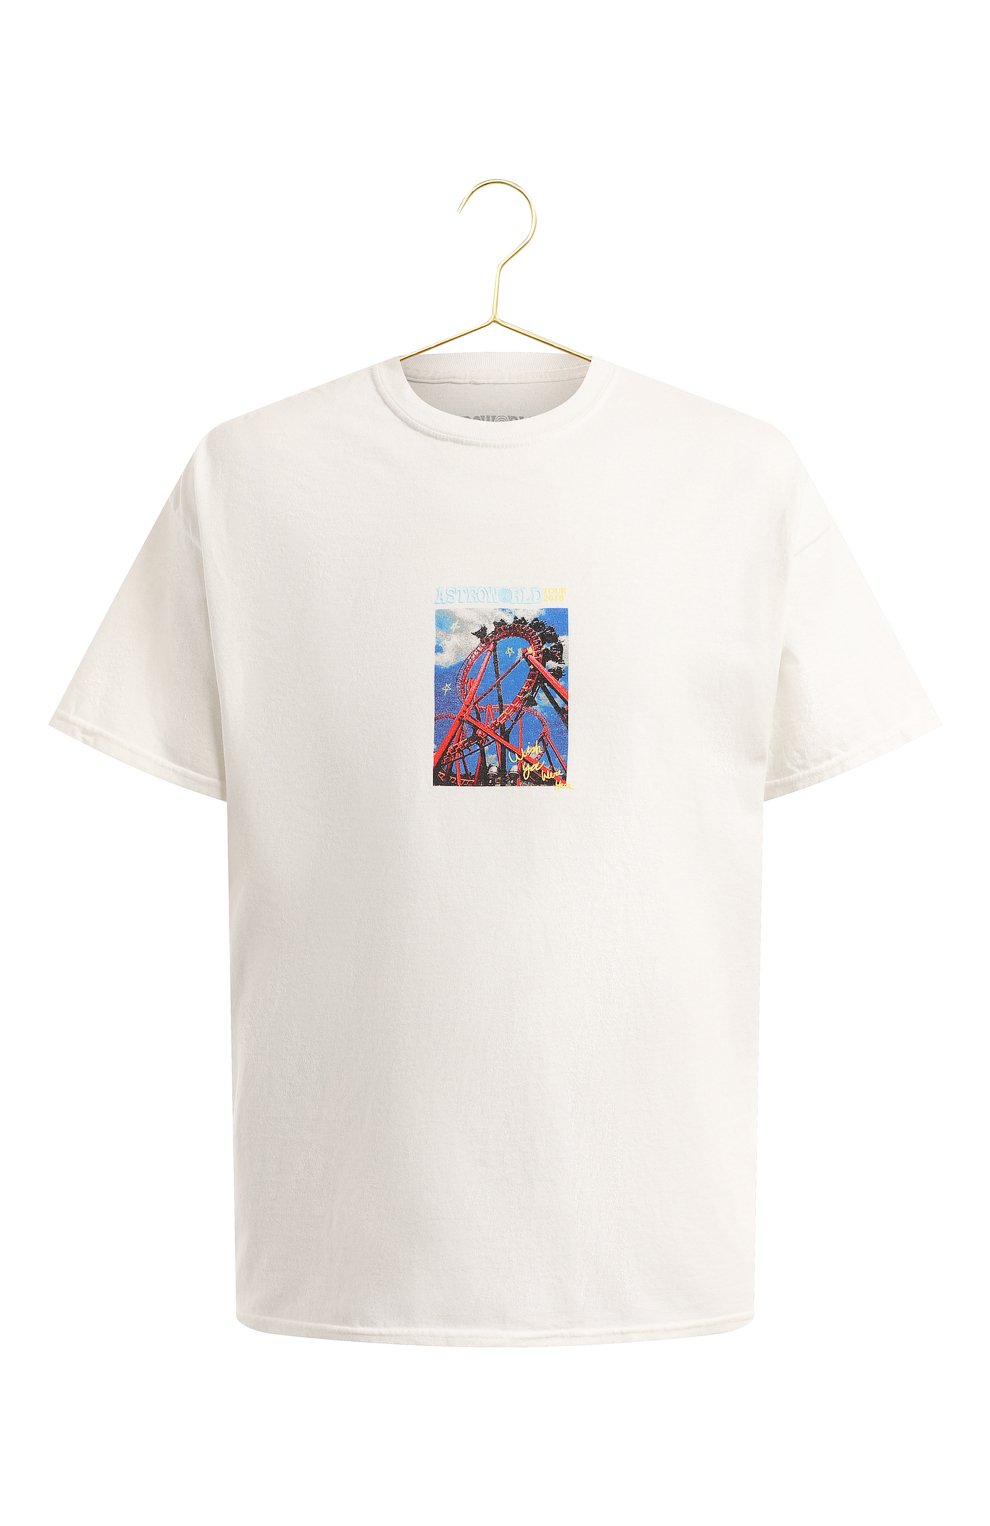 Хлопковая футболка | Travis Scott | Белый - 1